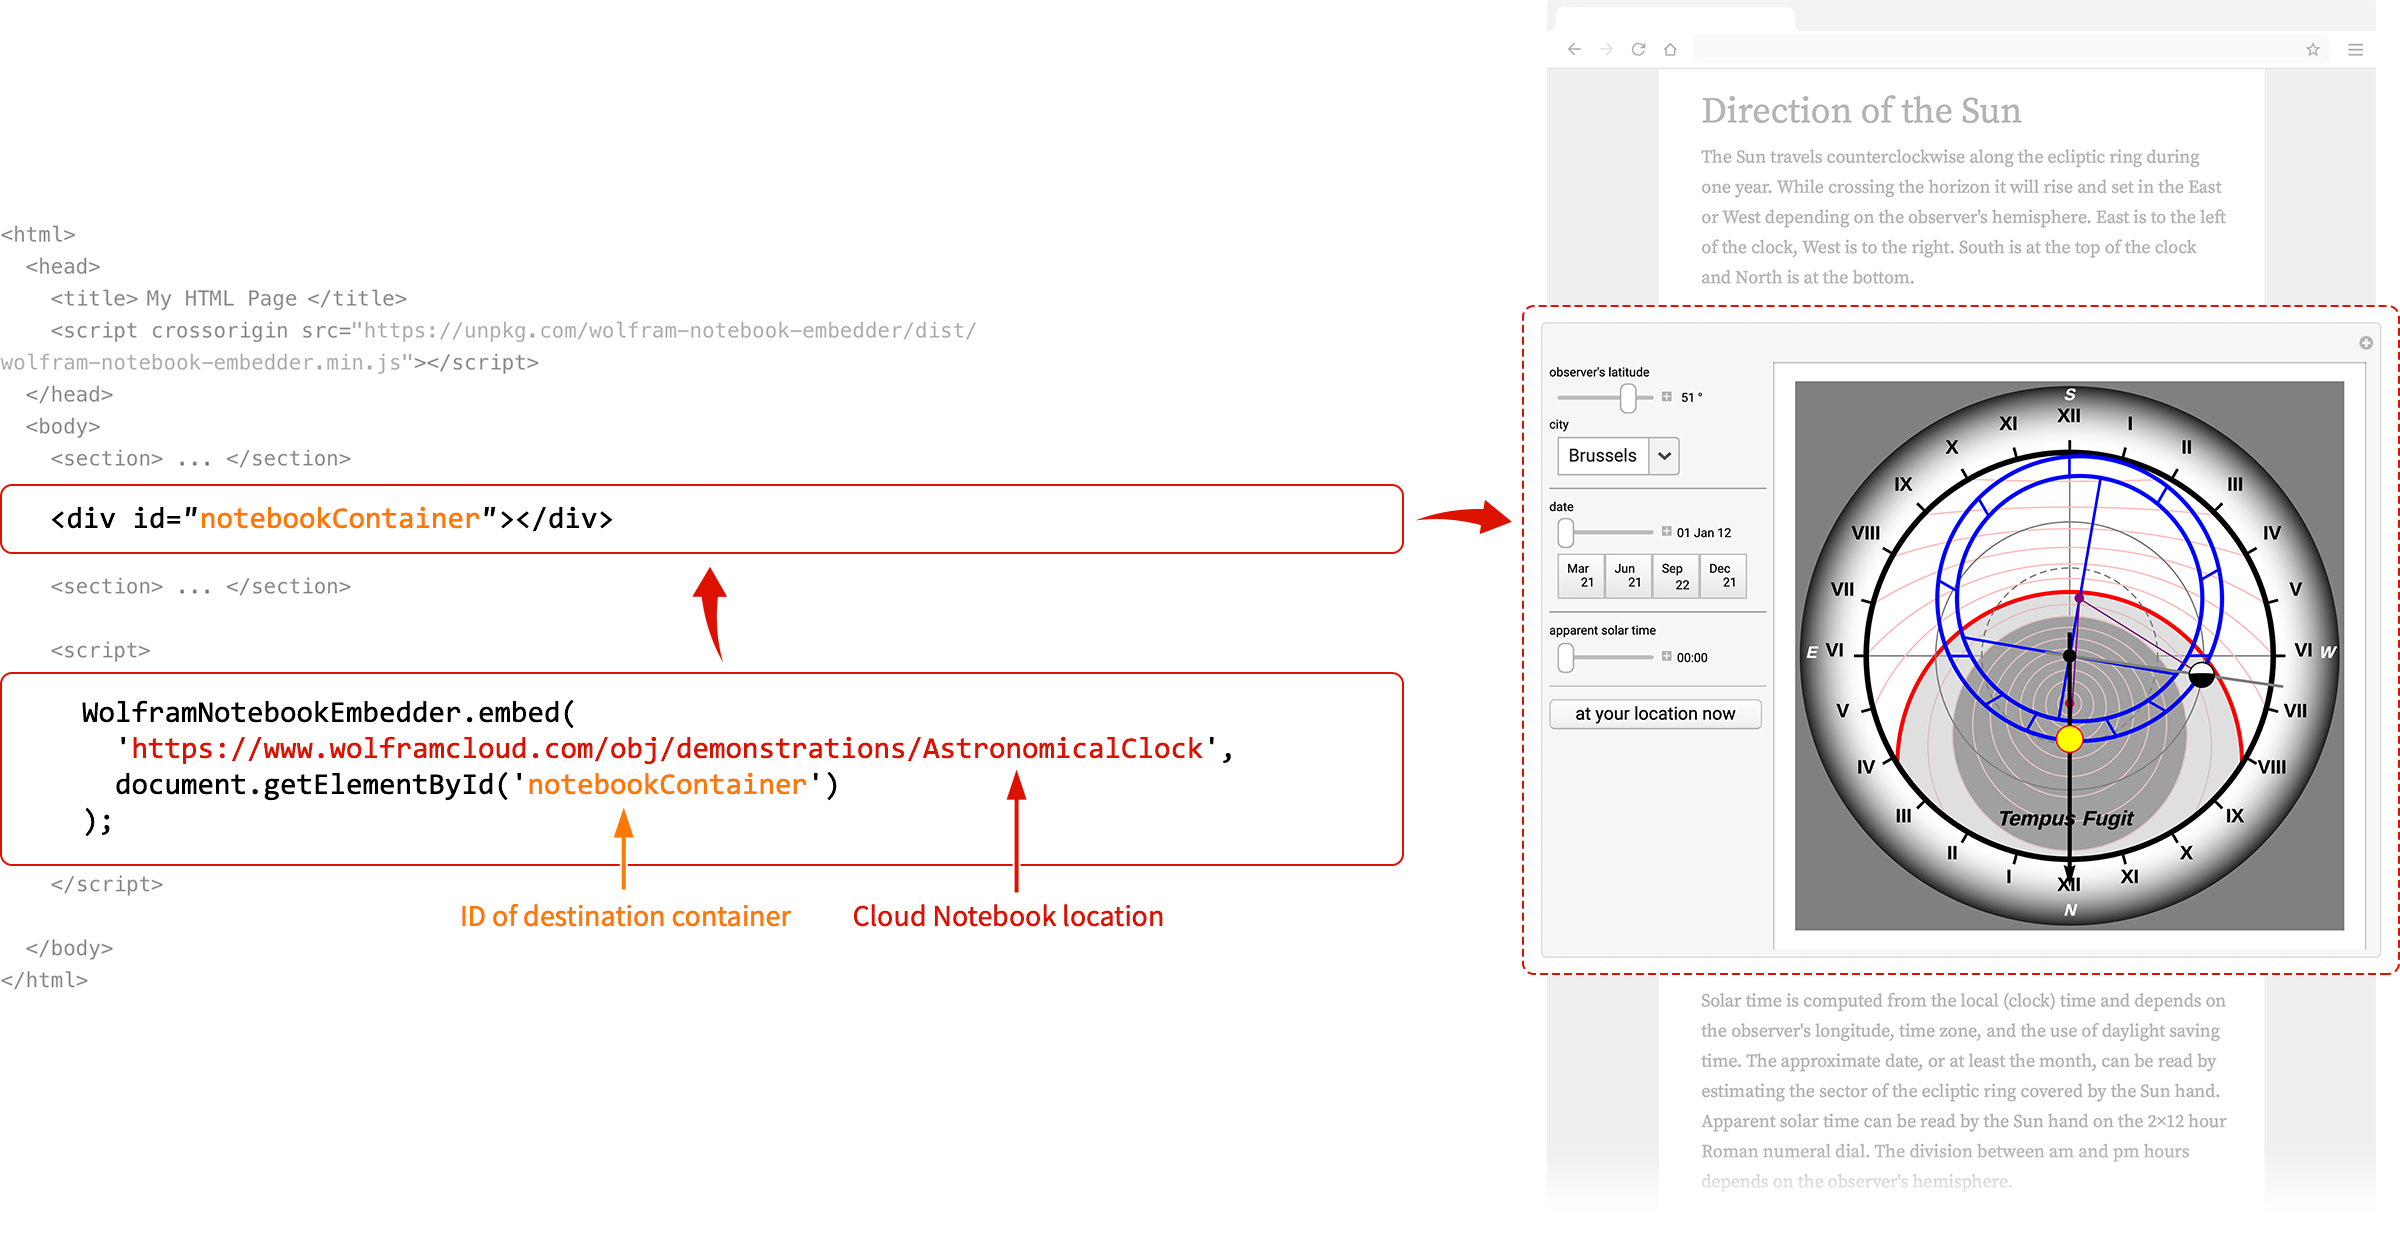 Wolfram Notebook Embedder workflow